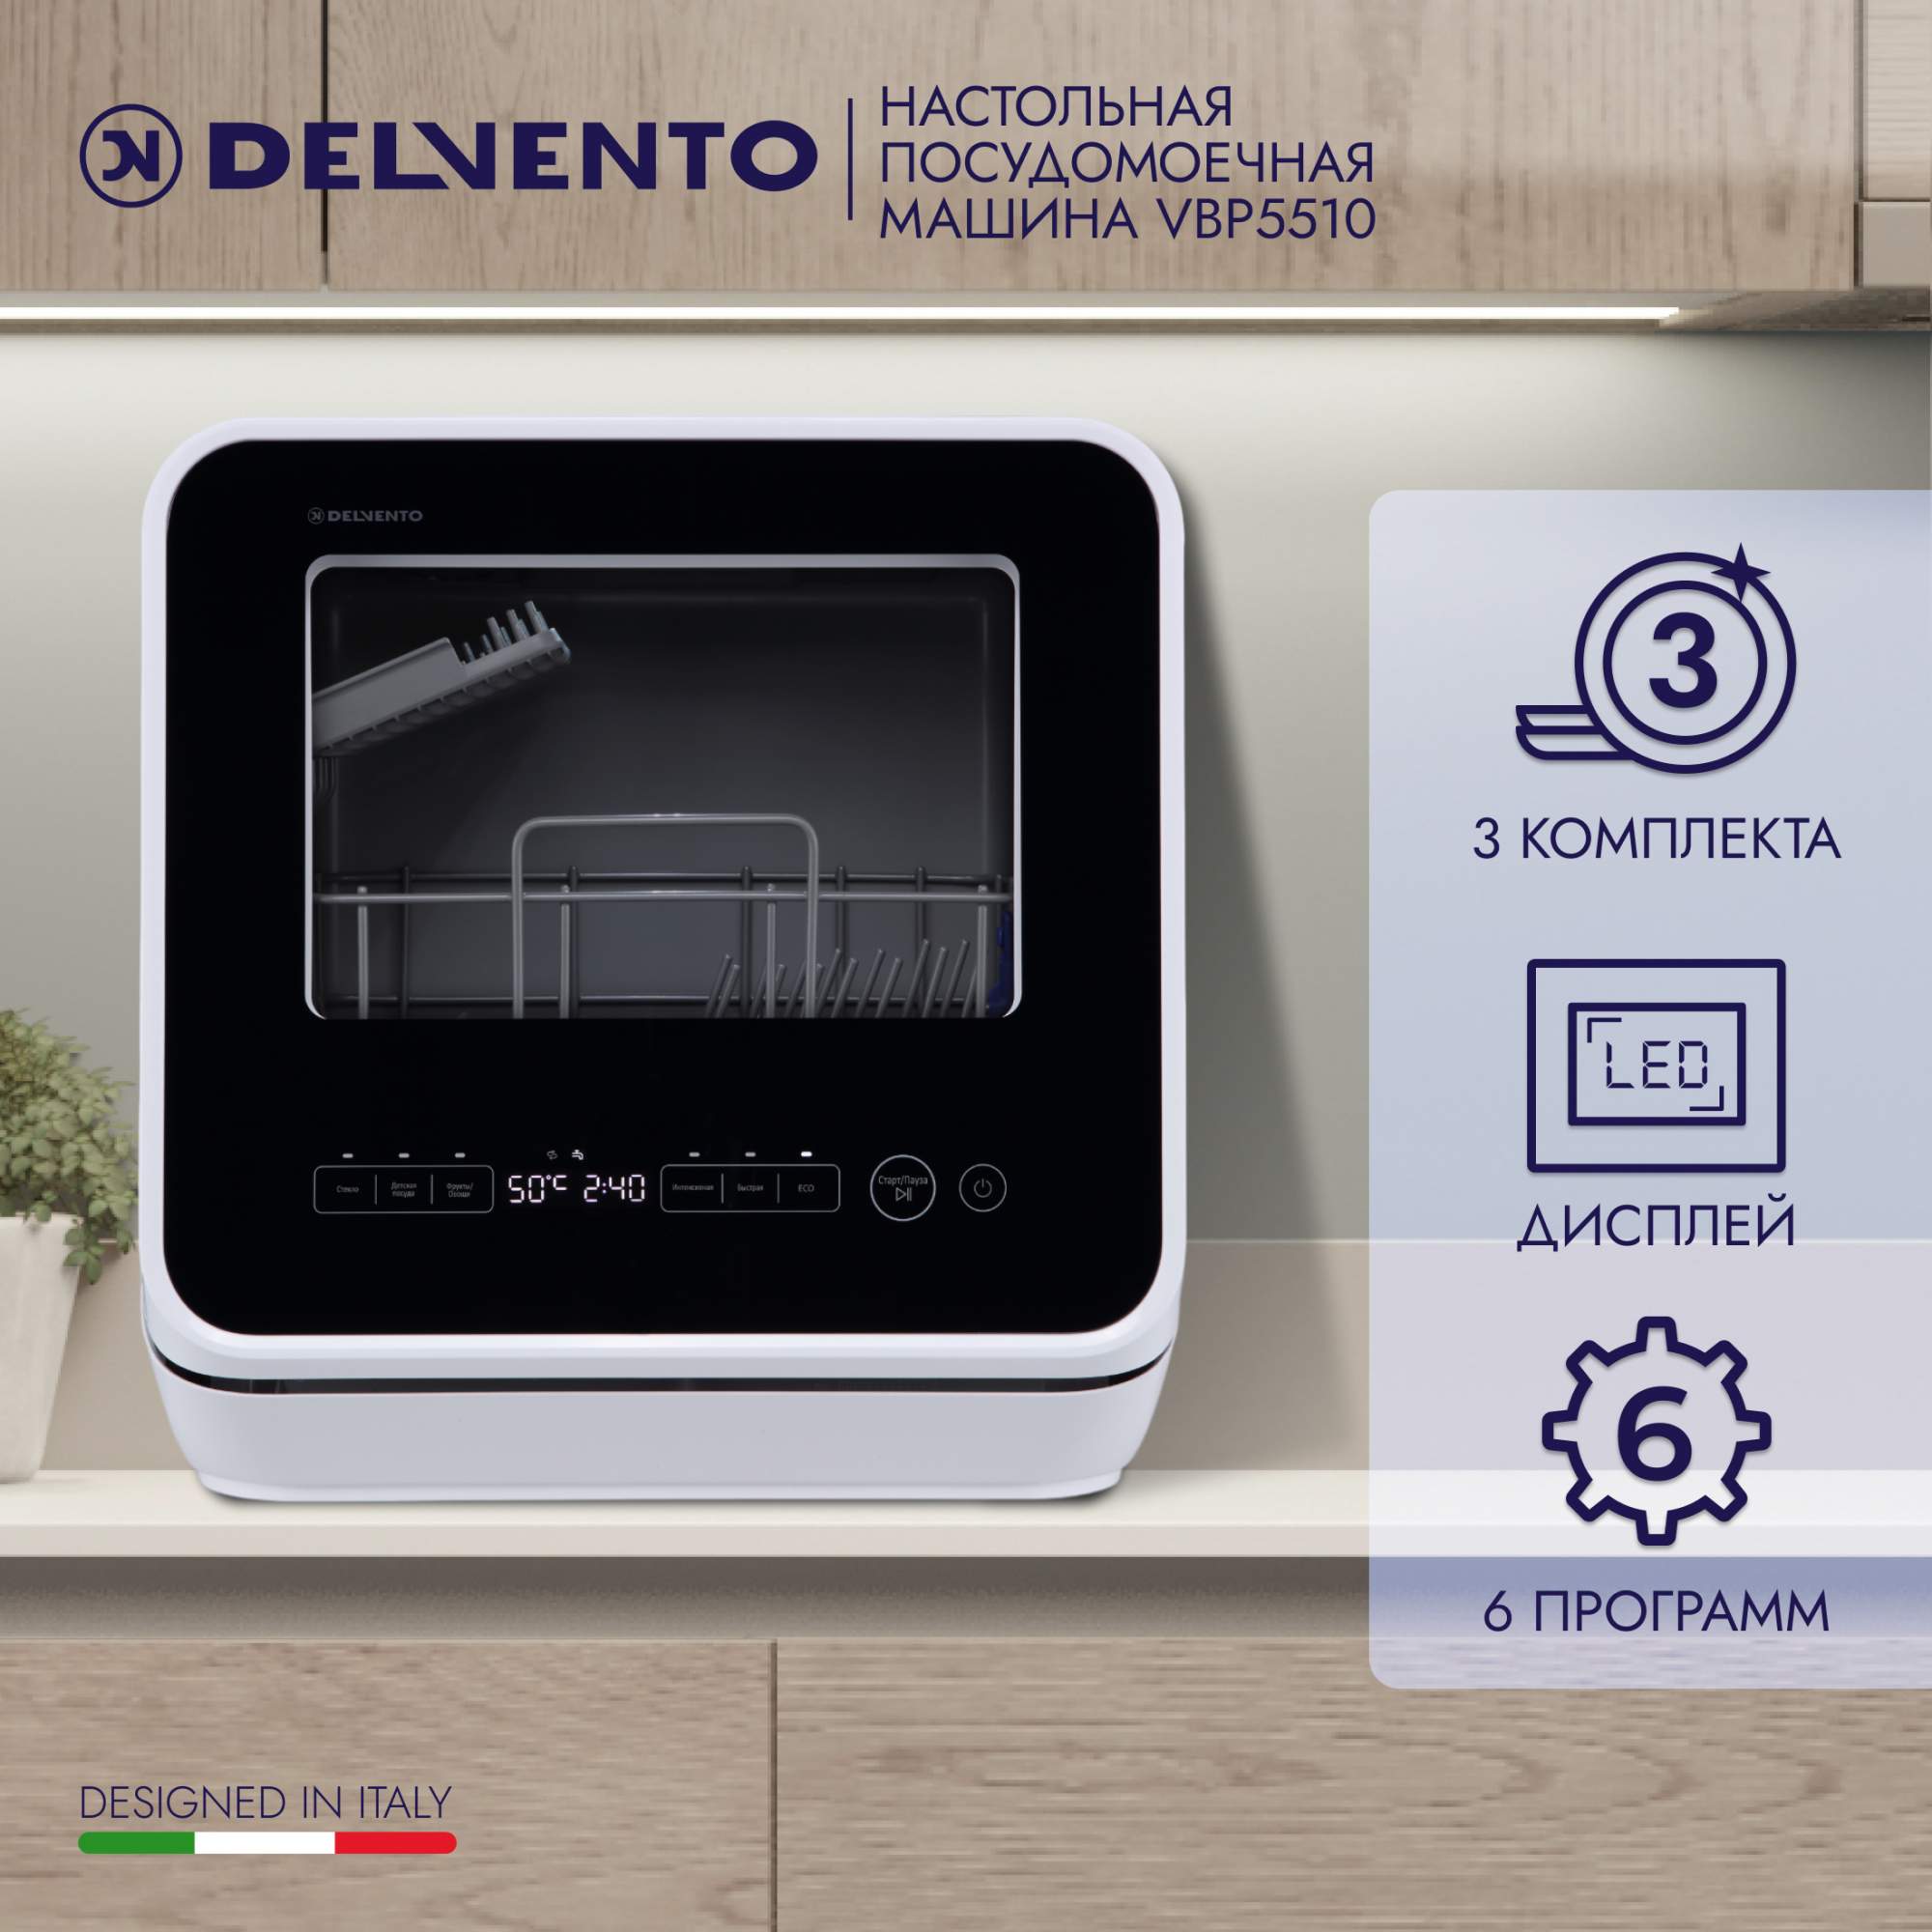 Посудомоечная машина DELVENTO VBP5510 черный, купить в Москве, цены в интернет-магазинах на Мегамаркет